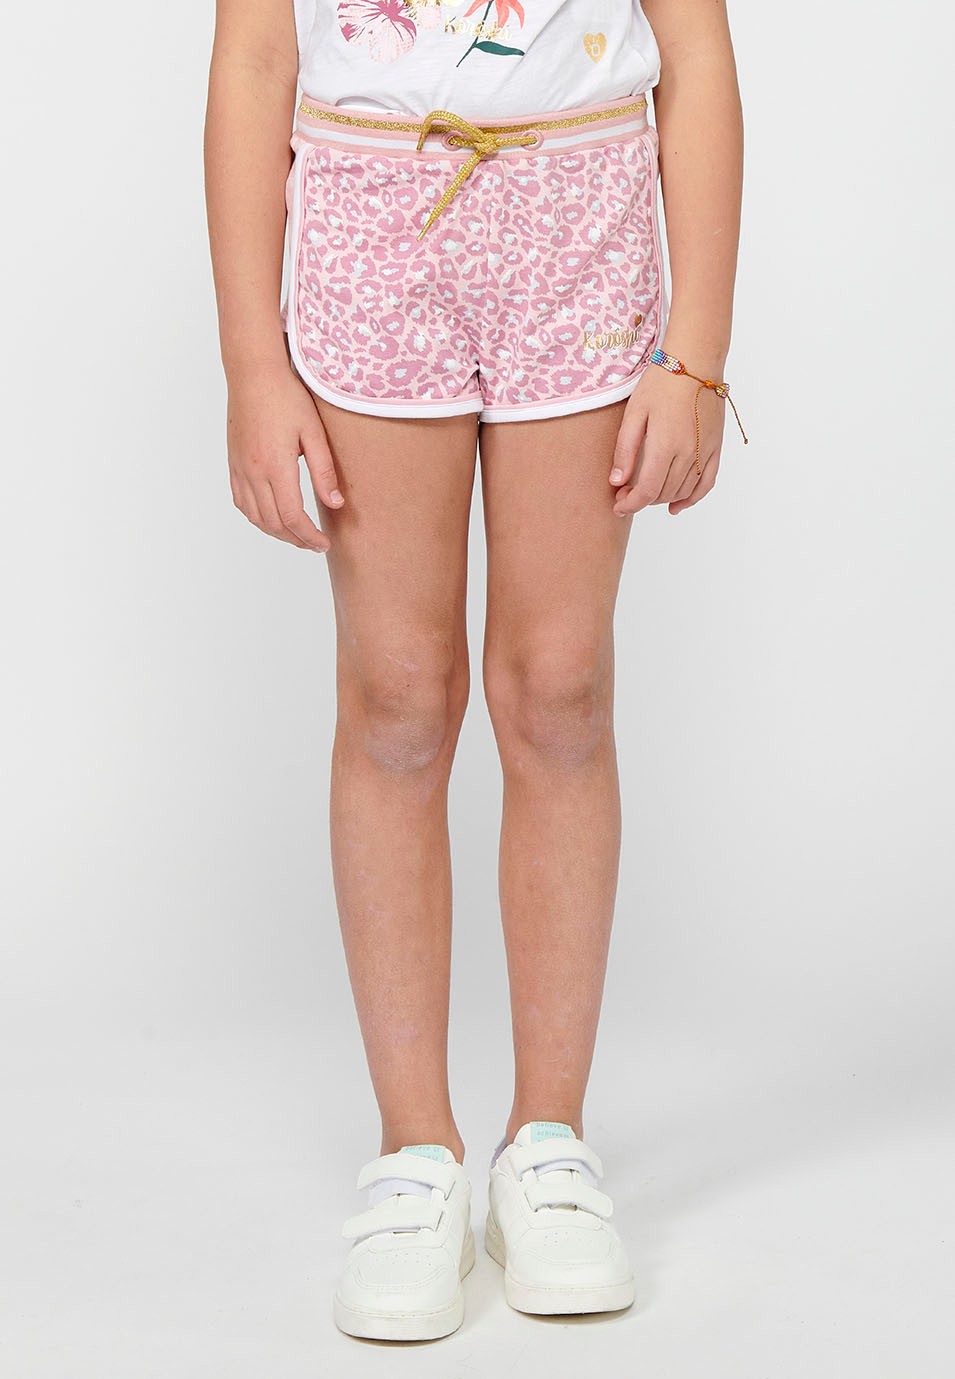 Pantalons curts Short amb Estampat animal print i Cintura amb goma i cordó de Color Rosa per a Nena